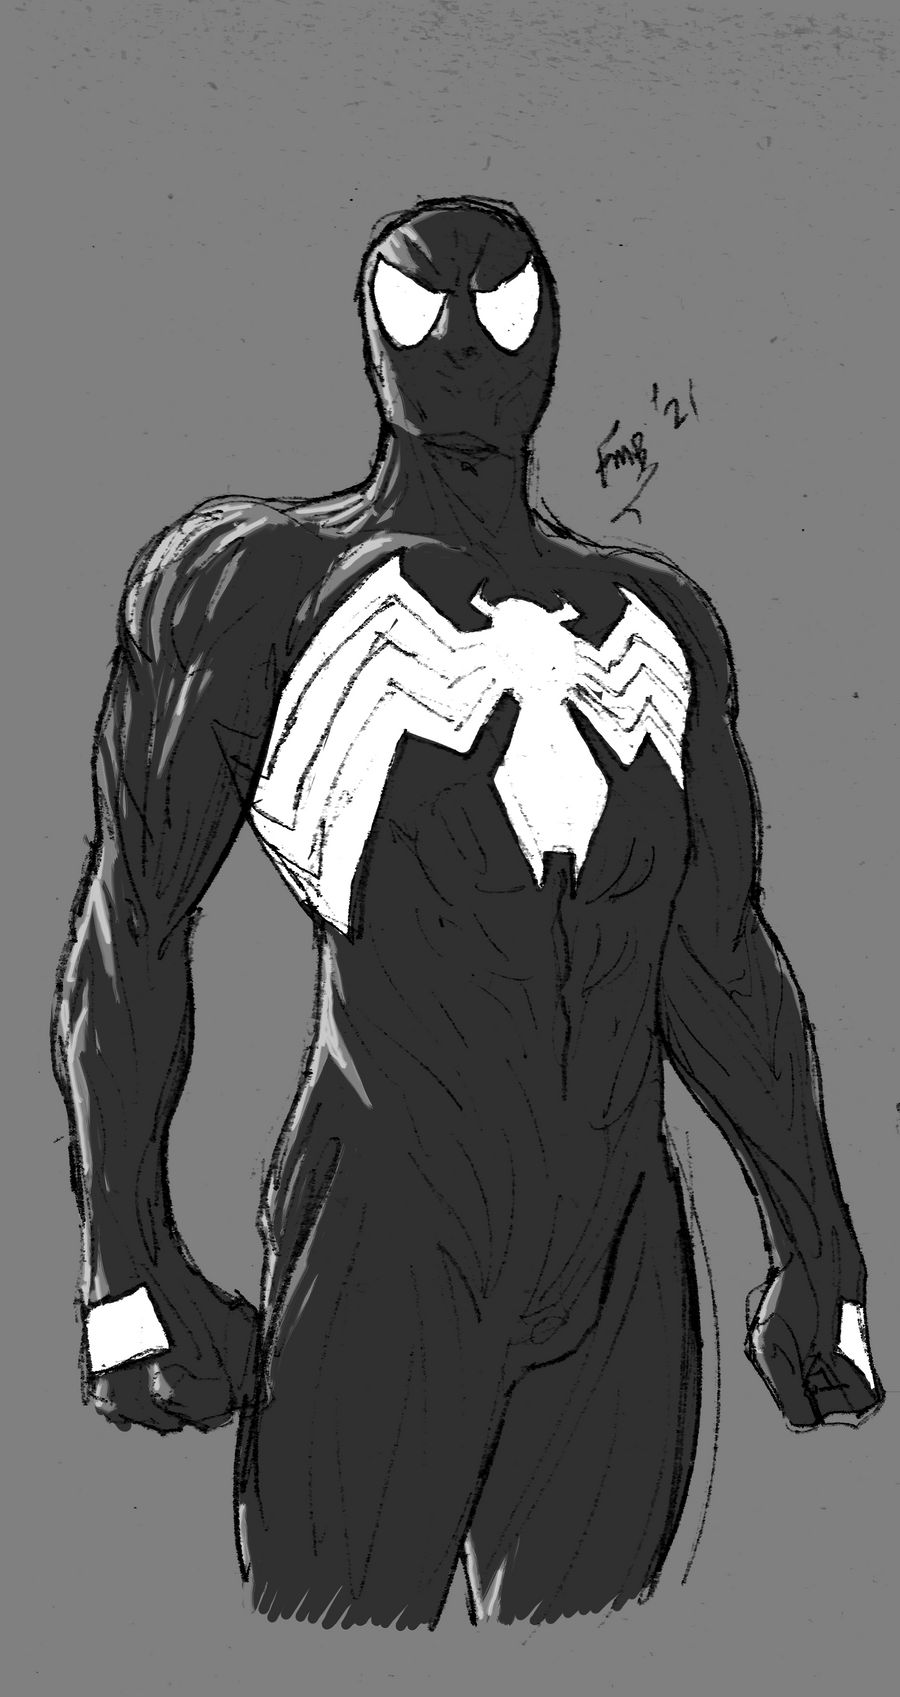 Spider man web of shadows 2 by Crossdigi on DeviantArt